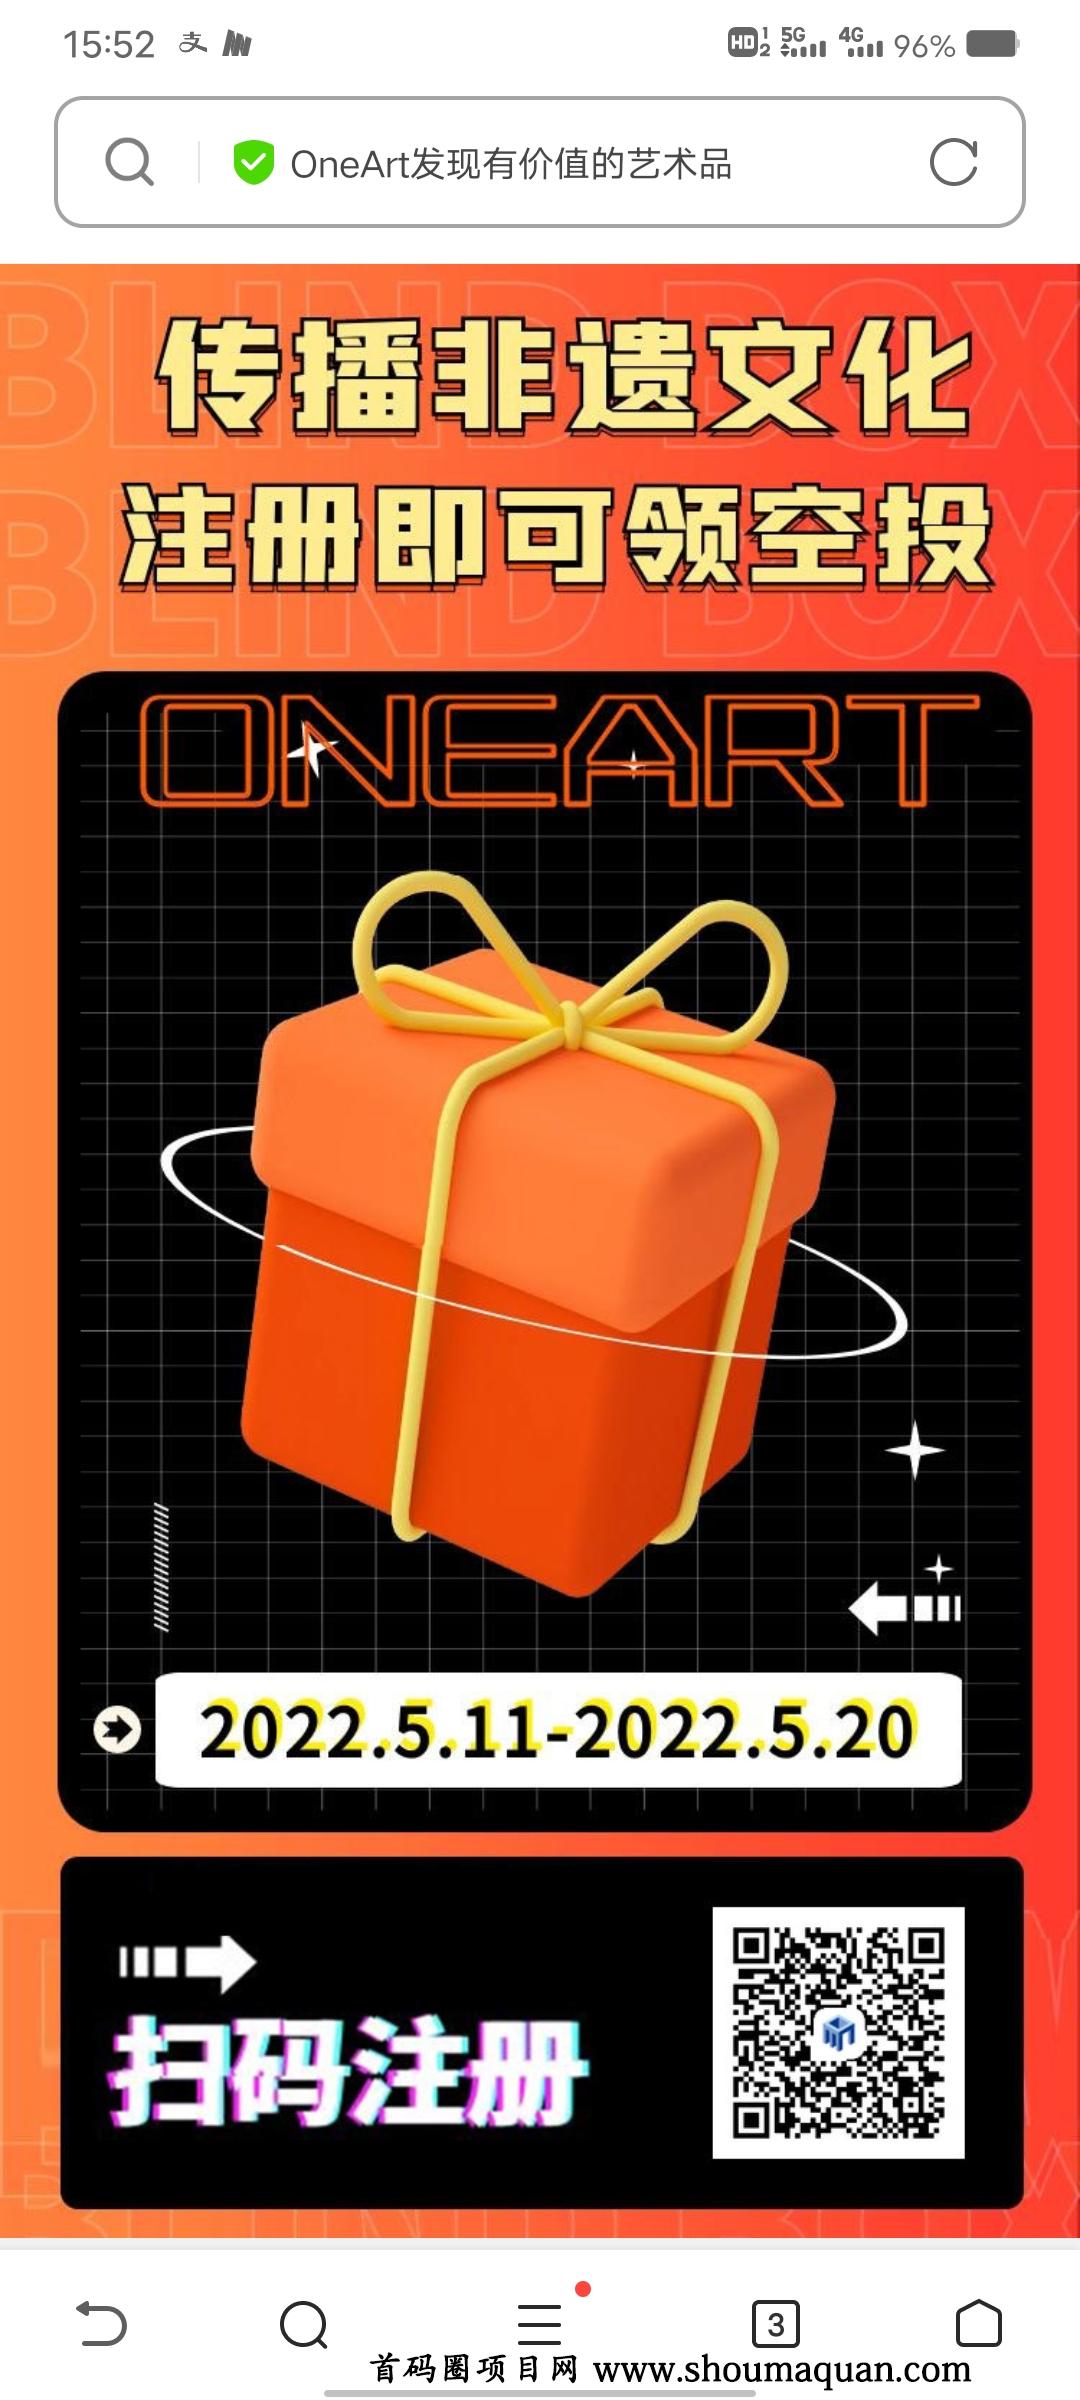 OneaArt，有二级市场，邀请送藏品